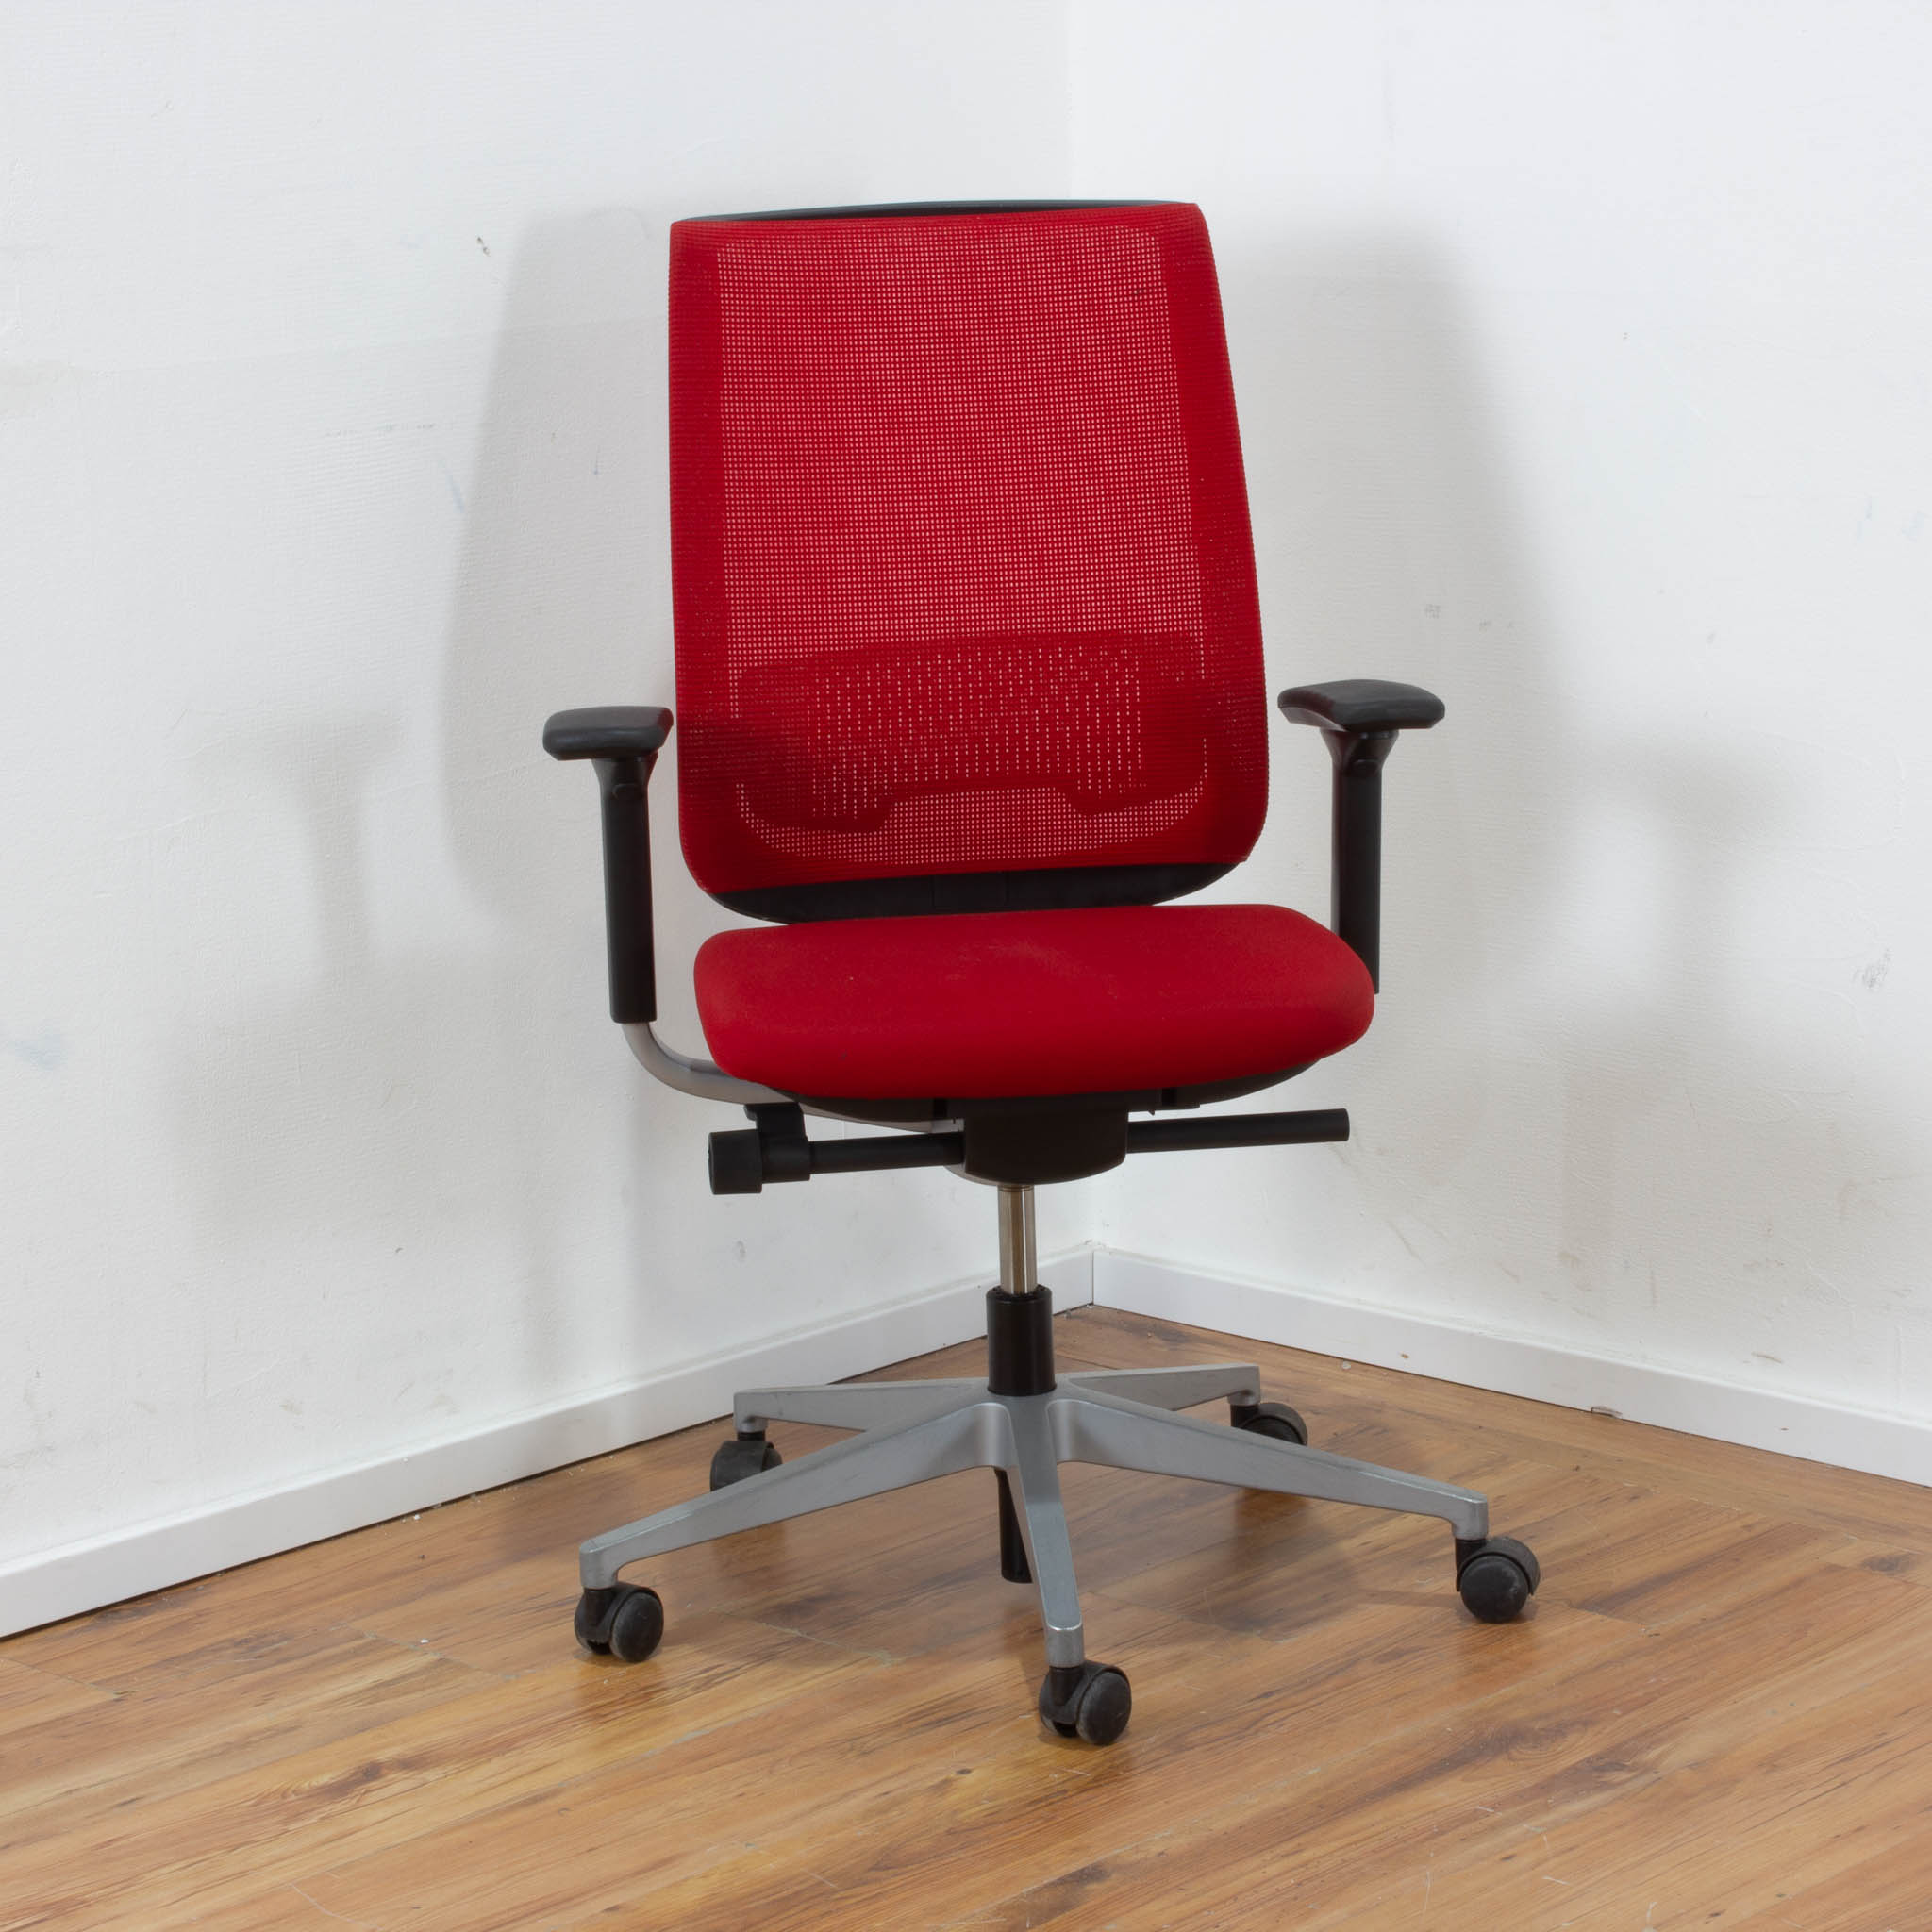 Steelcase Bürodrehstuhl rot mit Netz-Rückenlehne - 5-Sternfußgestell silber